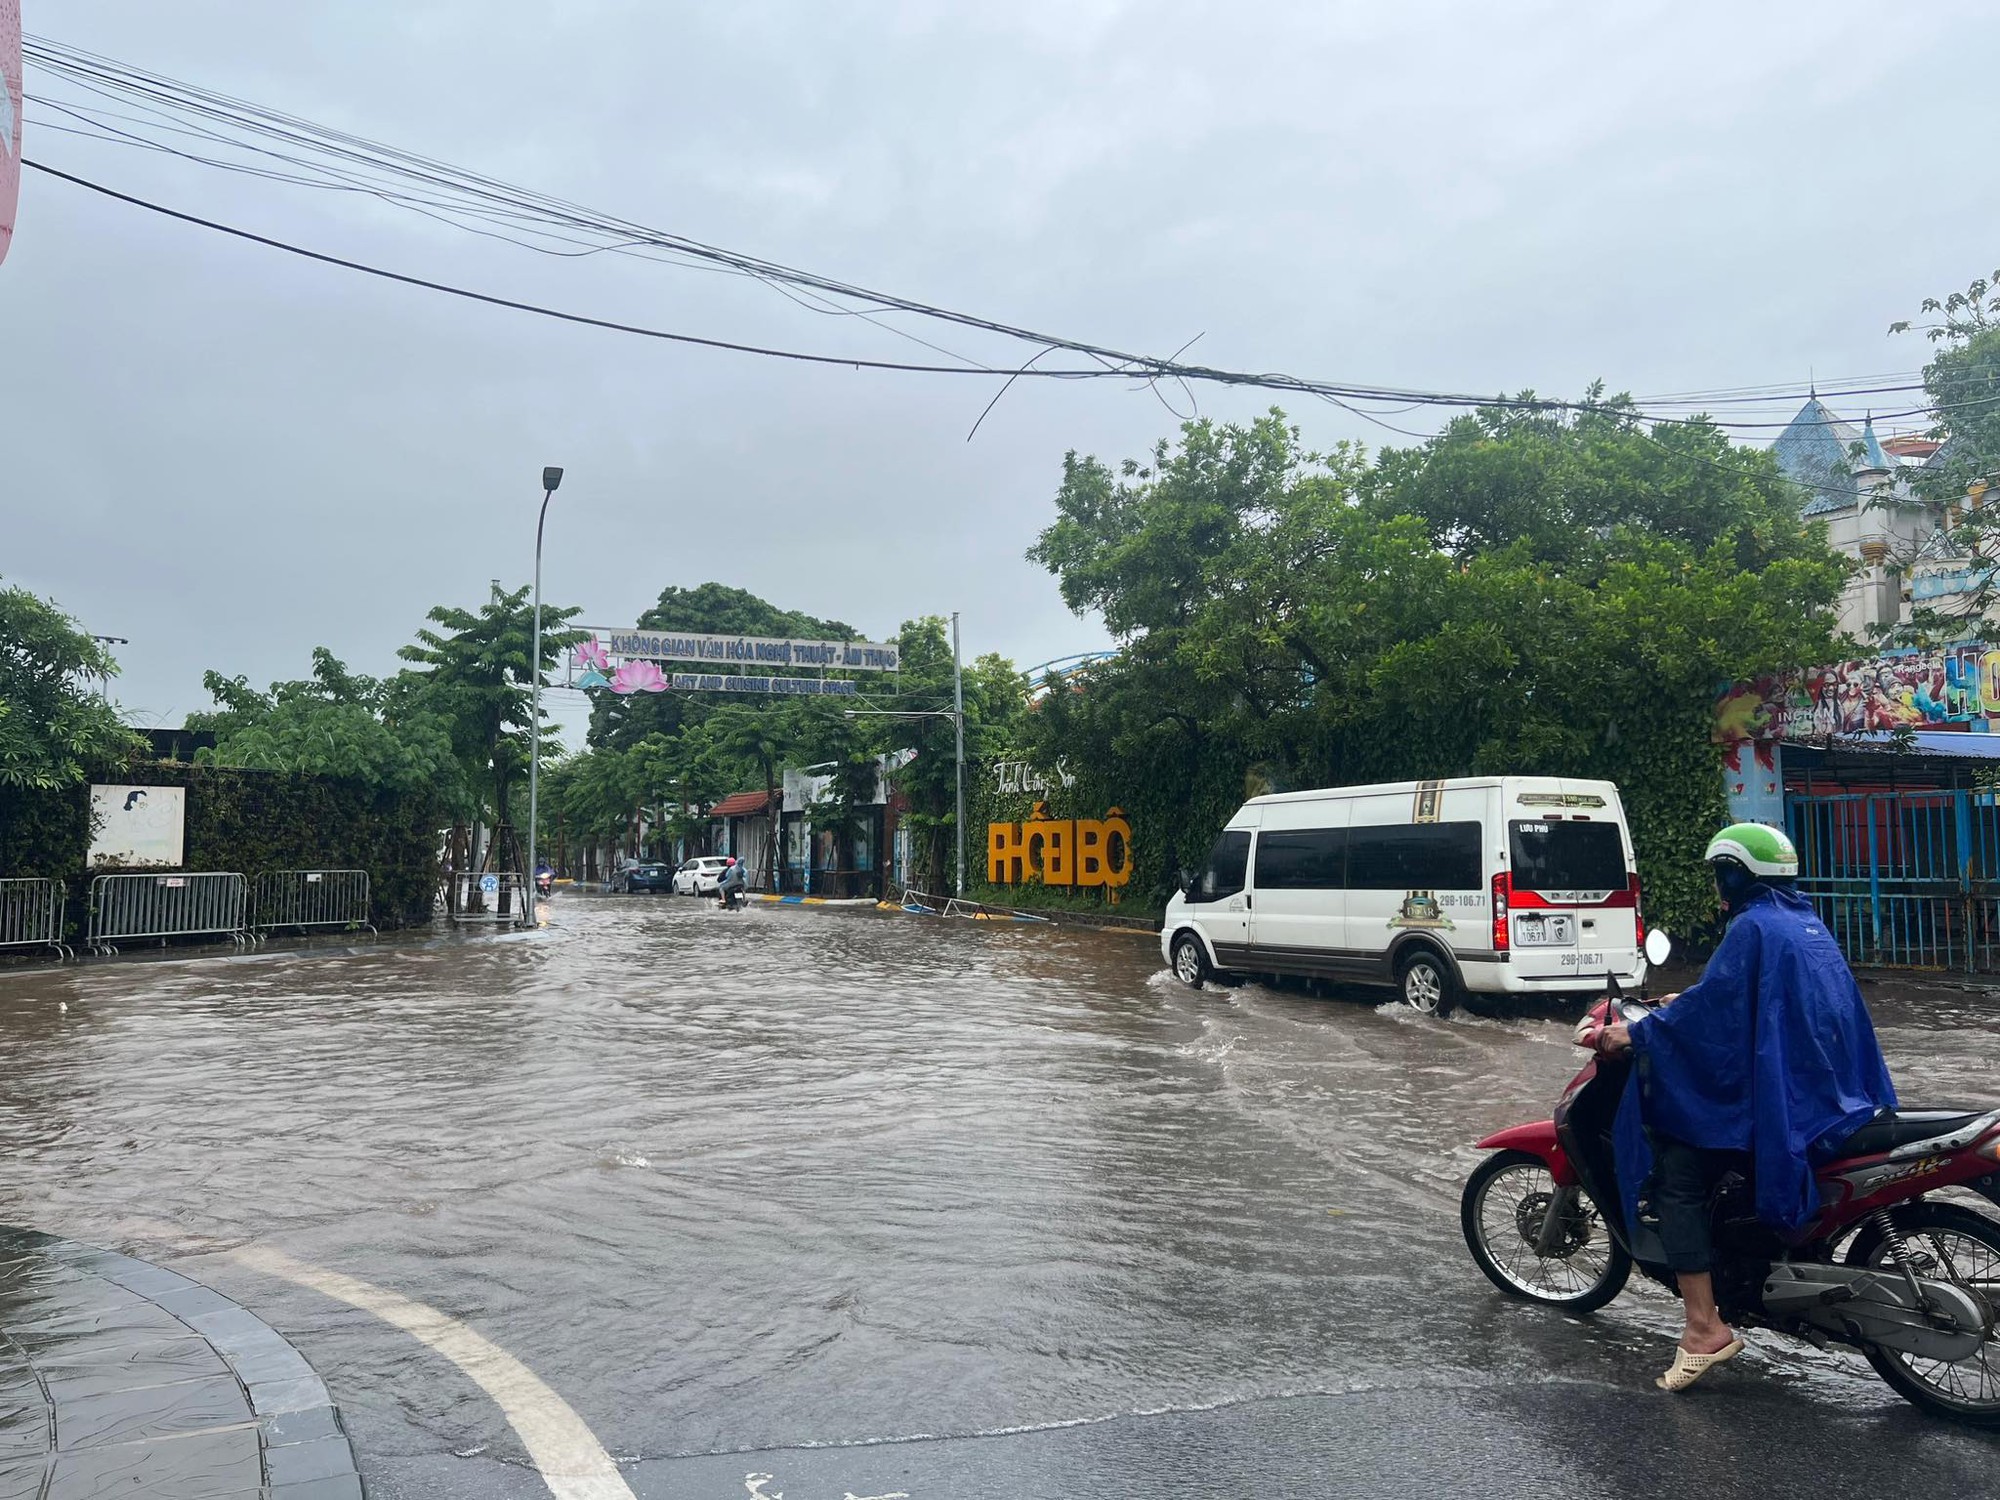 Hà Nội 'chìm trong biển nước' sau cơn mưa lớn - Ảnh 4.